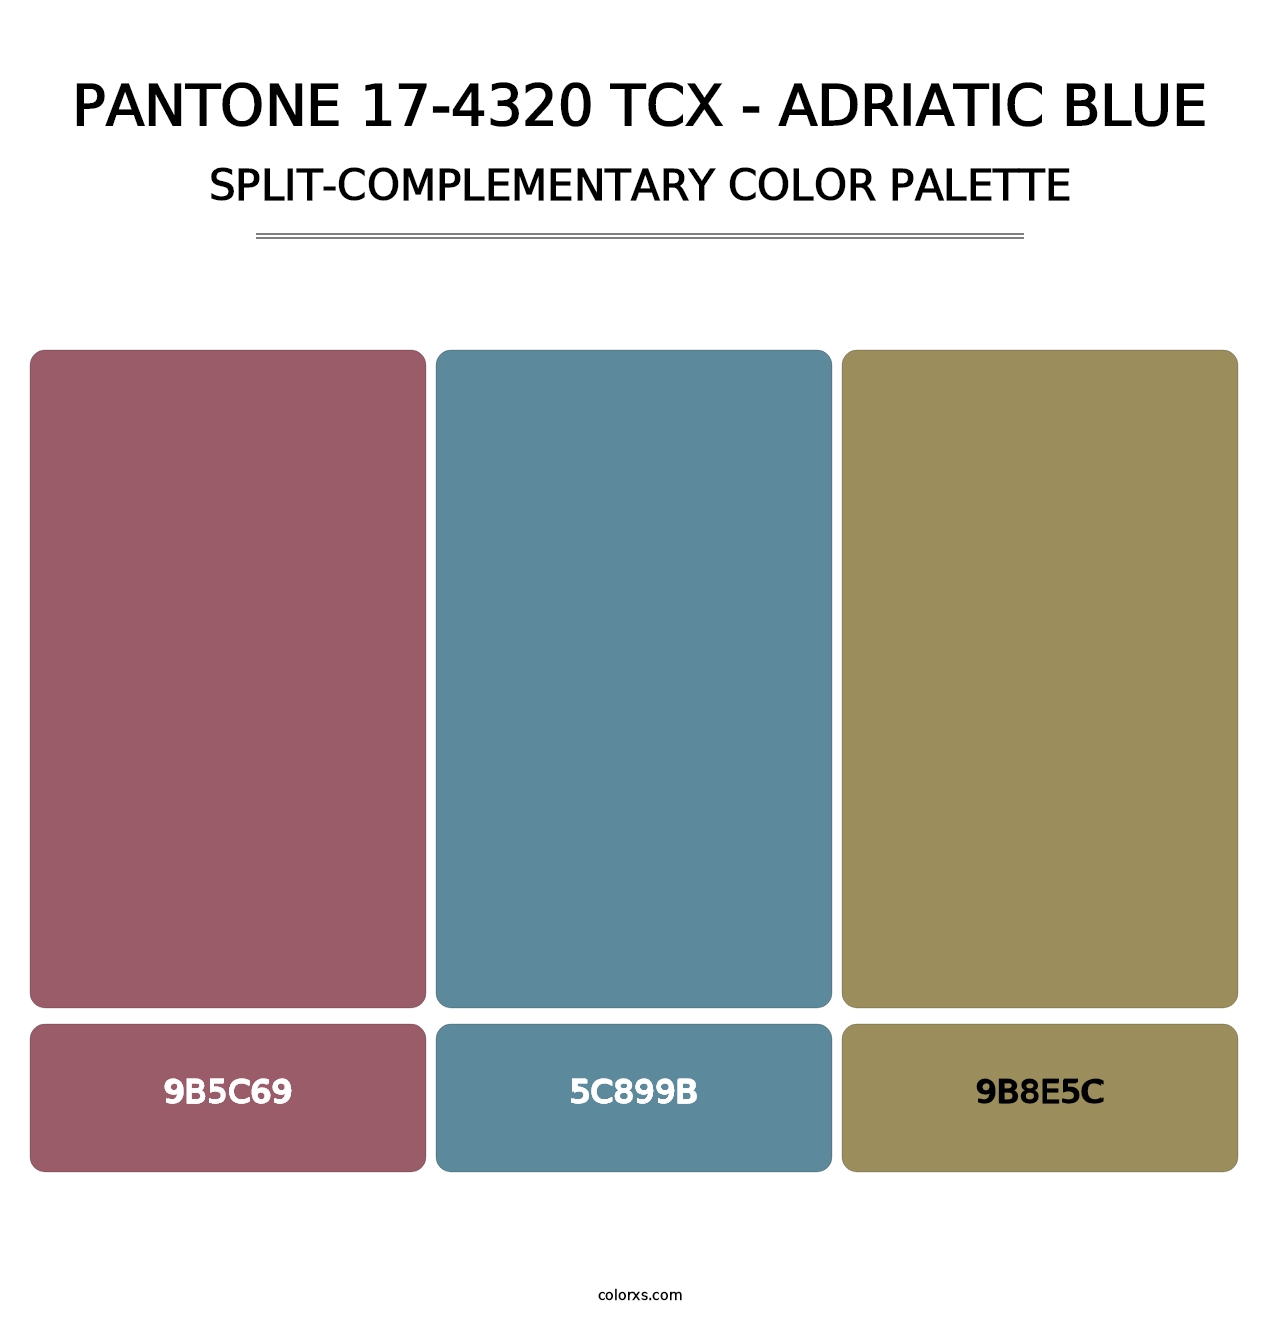 PANTONE 17-4320 TCX - Adriatic Blue - Split-Complementary Color Palette